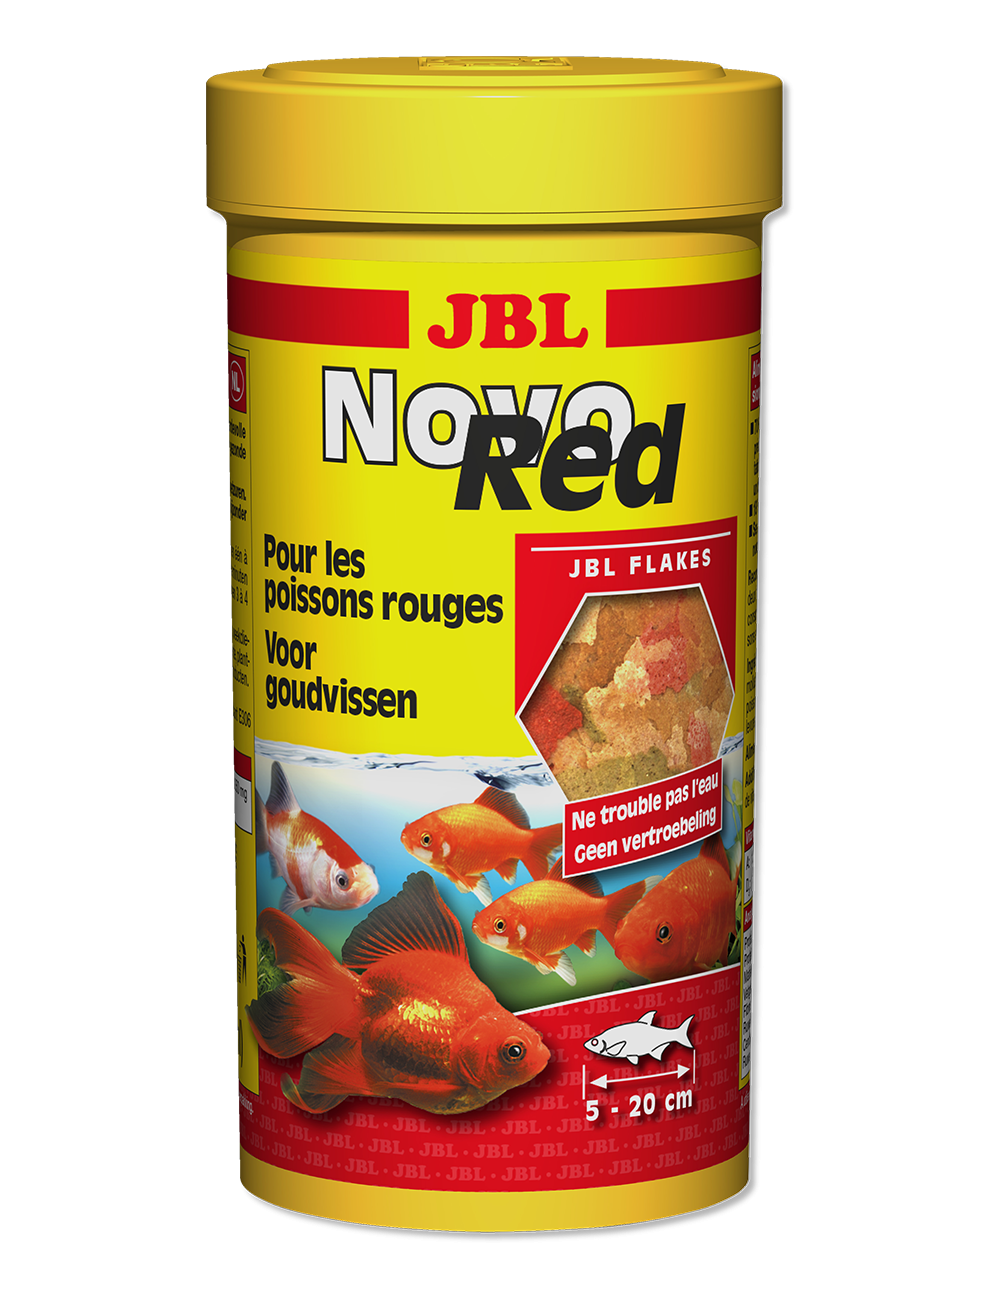 JBL - NovoRed - Aliment de base pour poissons rouges - 250ml